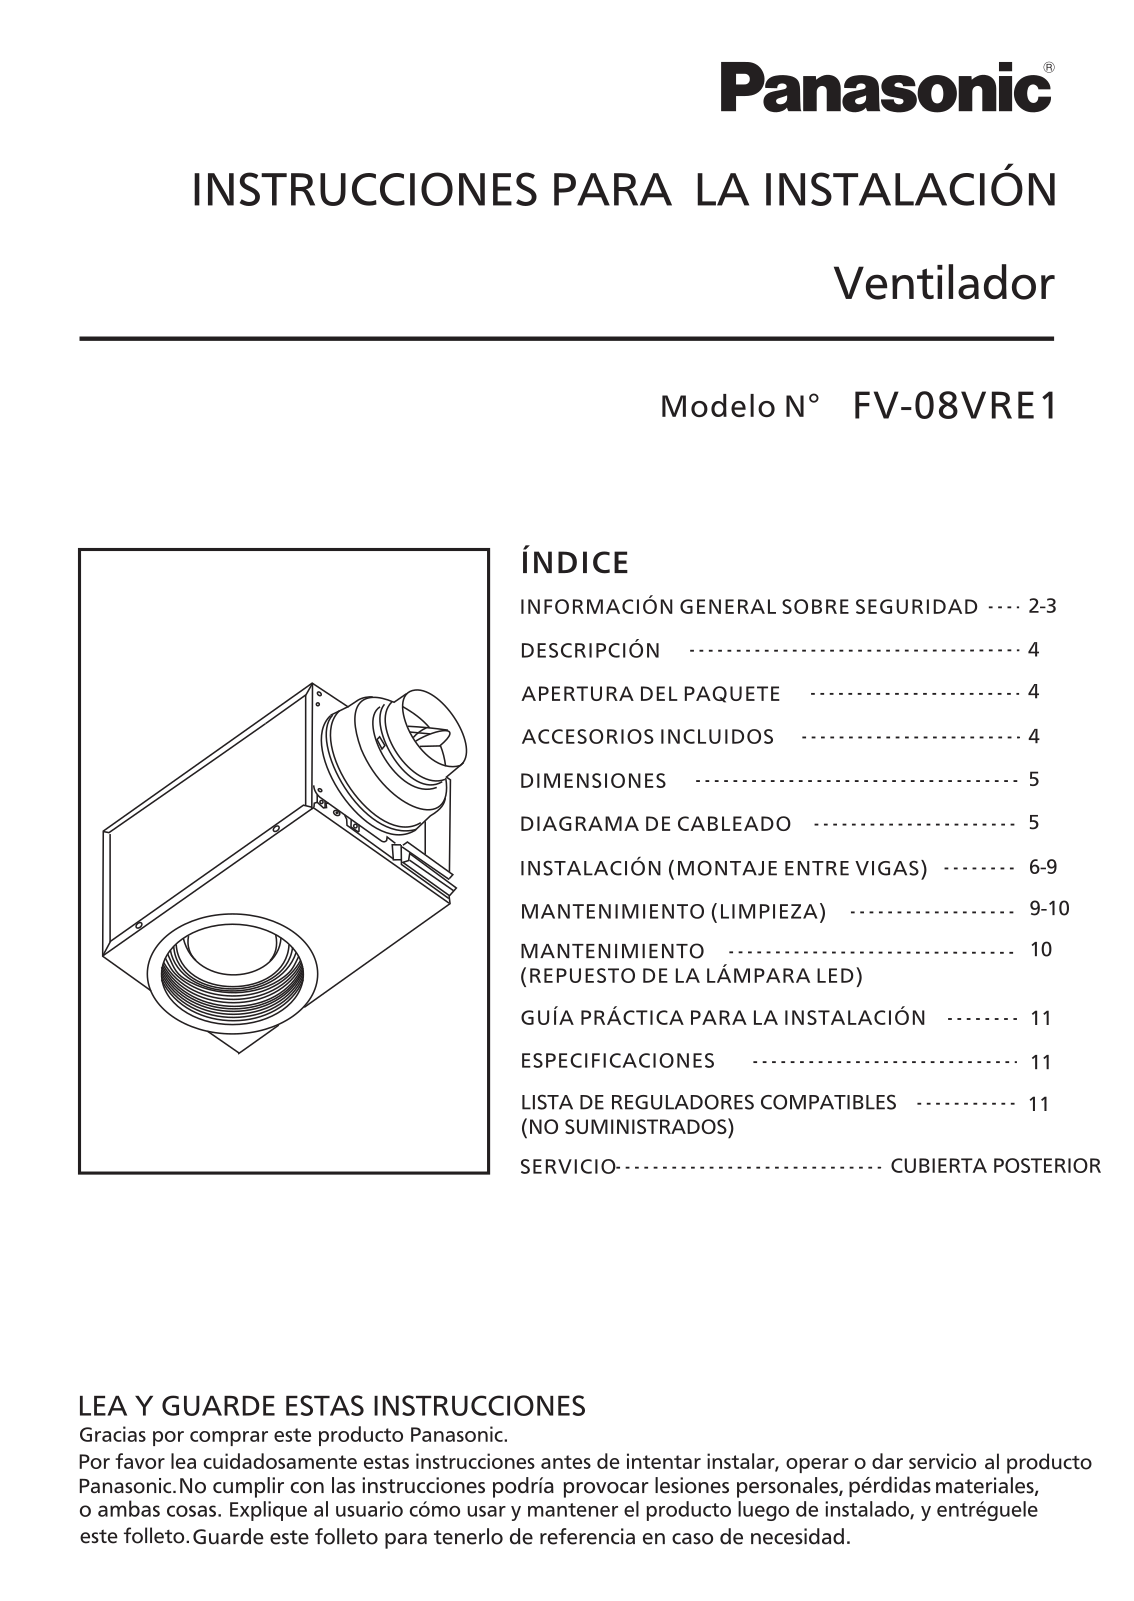 Panasonic fv-08vre1, fv-08VRE4022A, fv-08vre0421a Instruction Manual